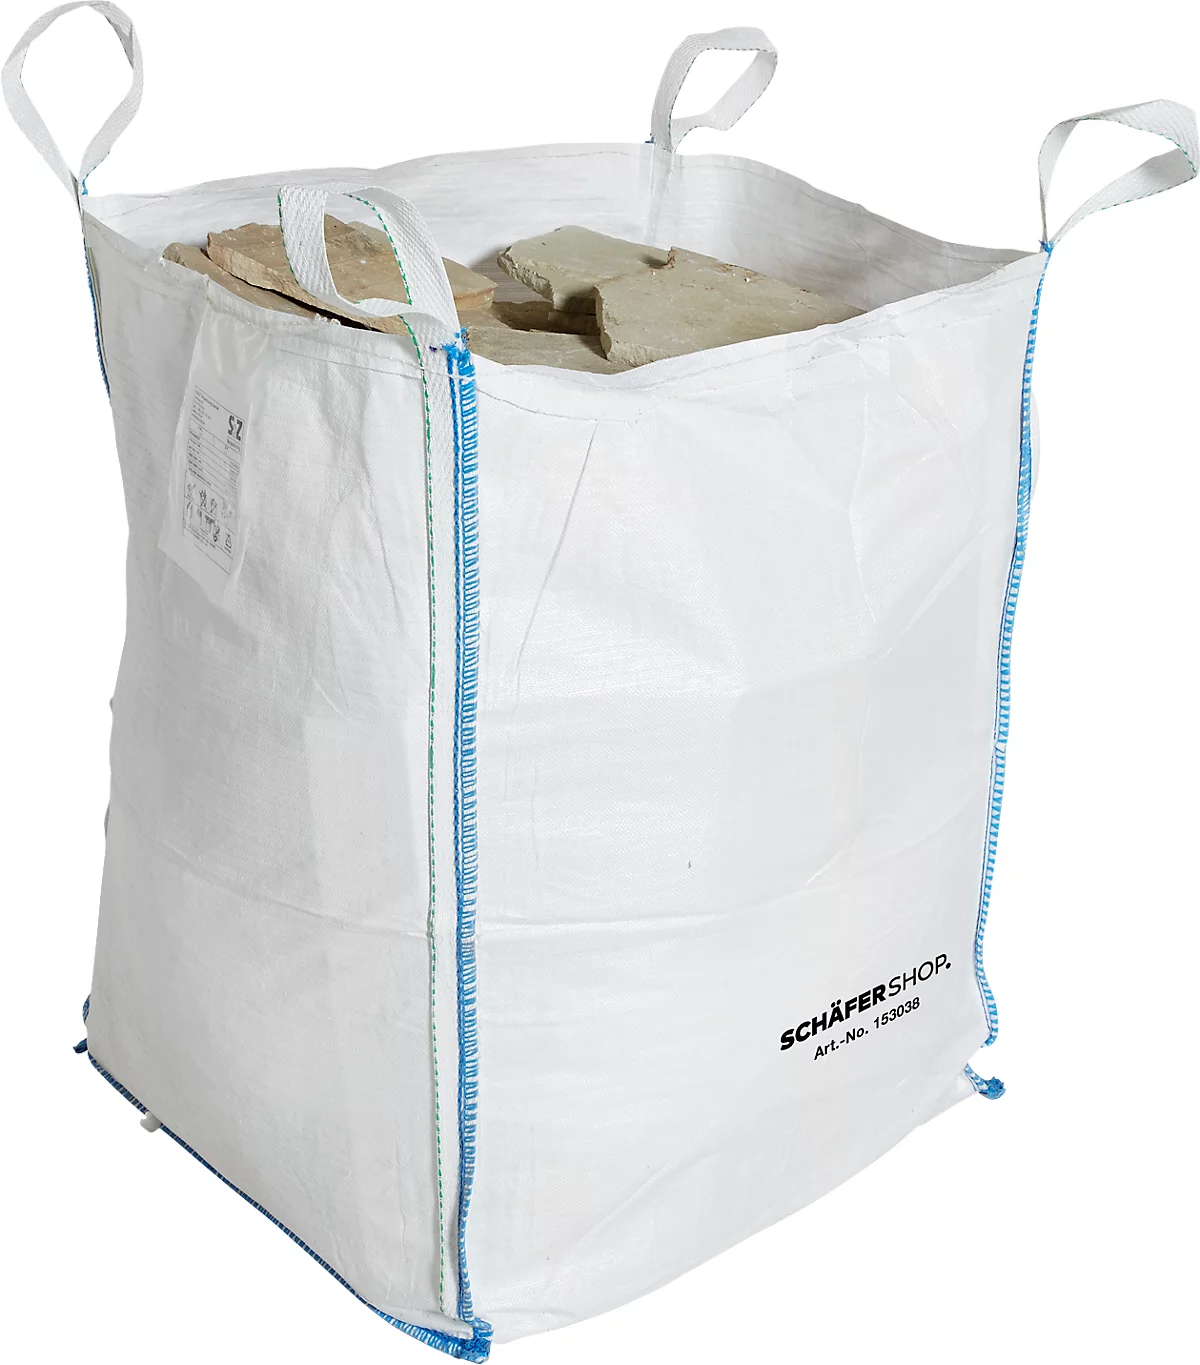 Bolsa para contenedores Schäfer Shop Genius Big Bag, abierta, hasta 1,5 t, 4 lazos de elevación, 5 piezas, ancho 900 x fondo 900 x alto 1200 mm, blanco